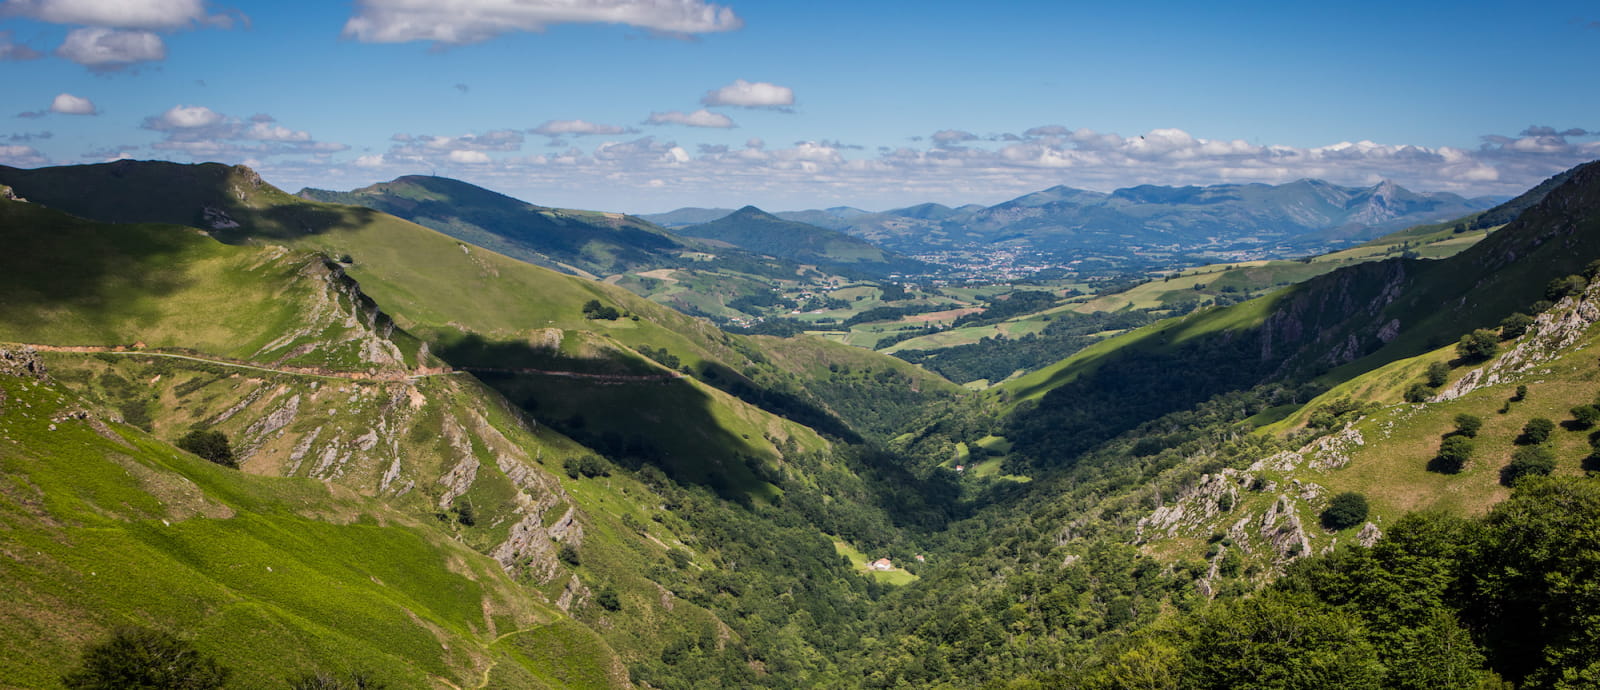 vue sur la vallee de saint etienne de baigorry depuis le col ispeguy - pays basque